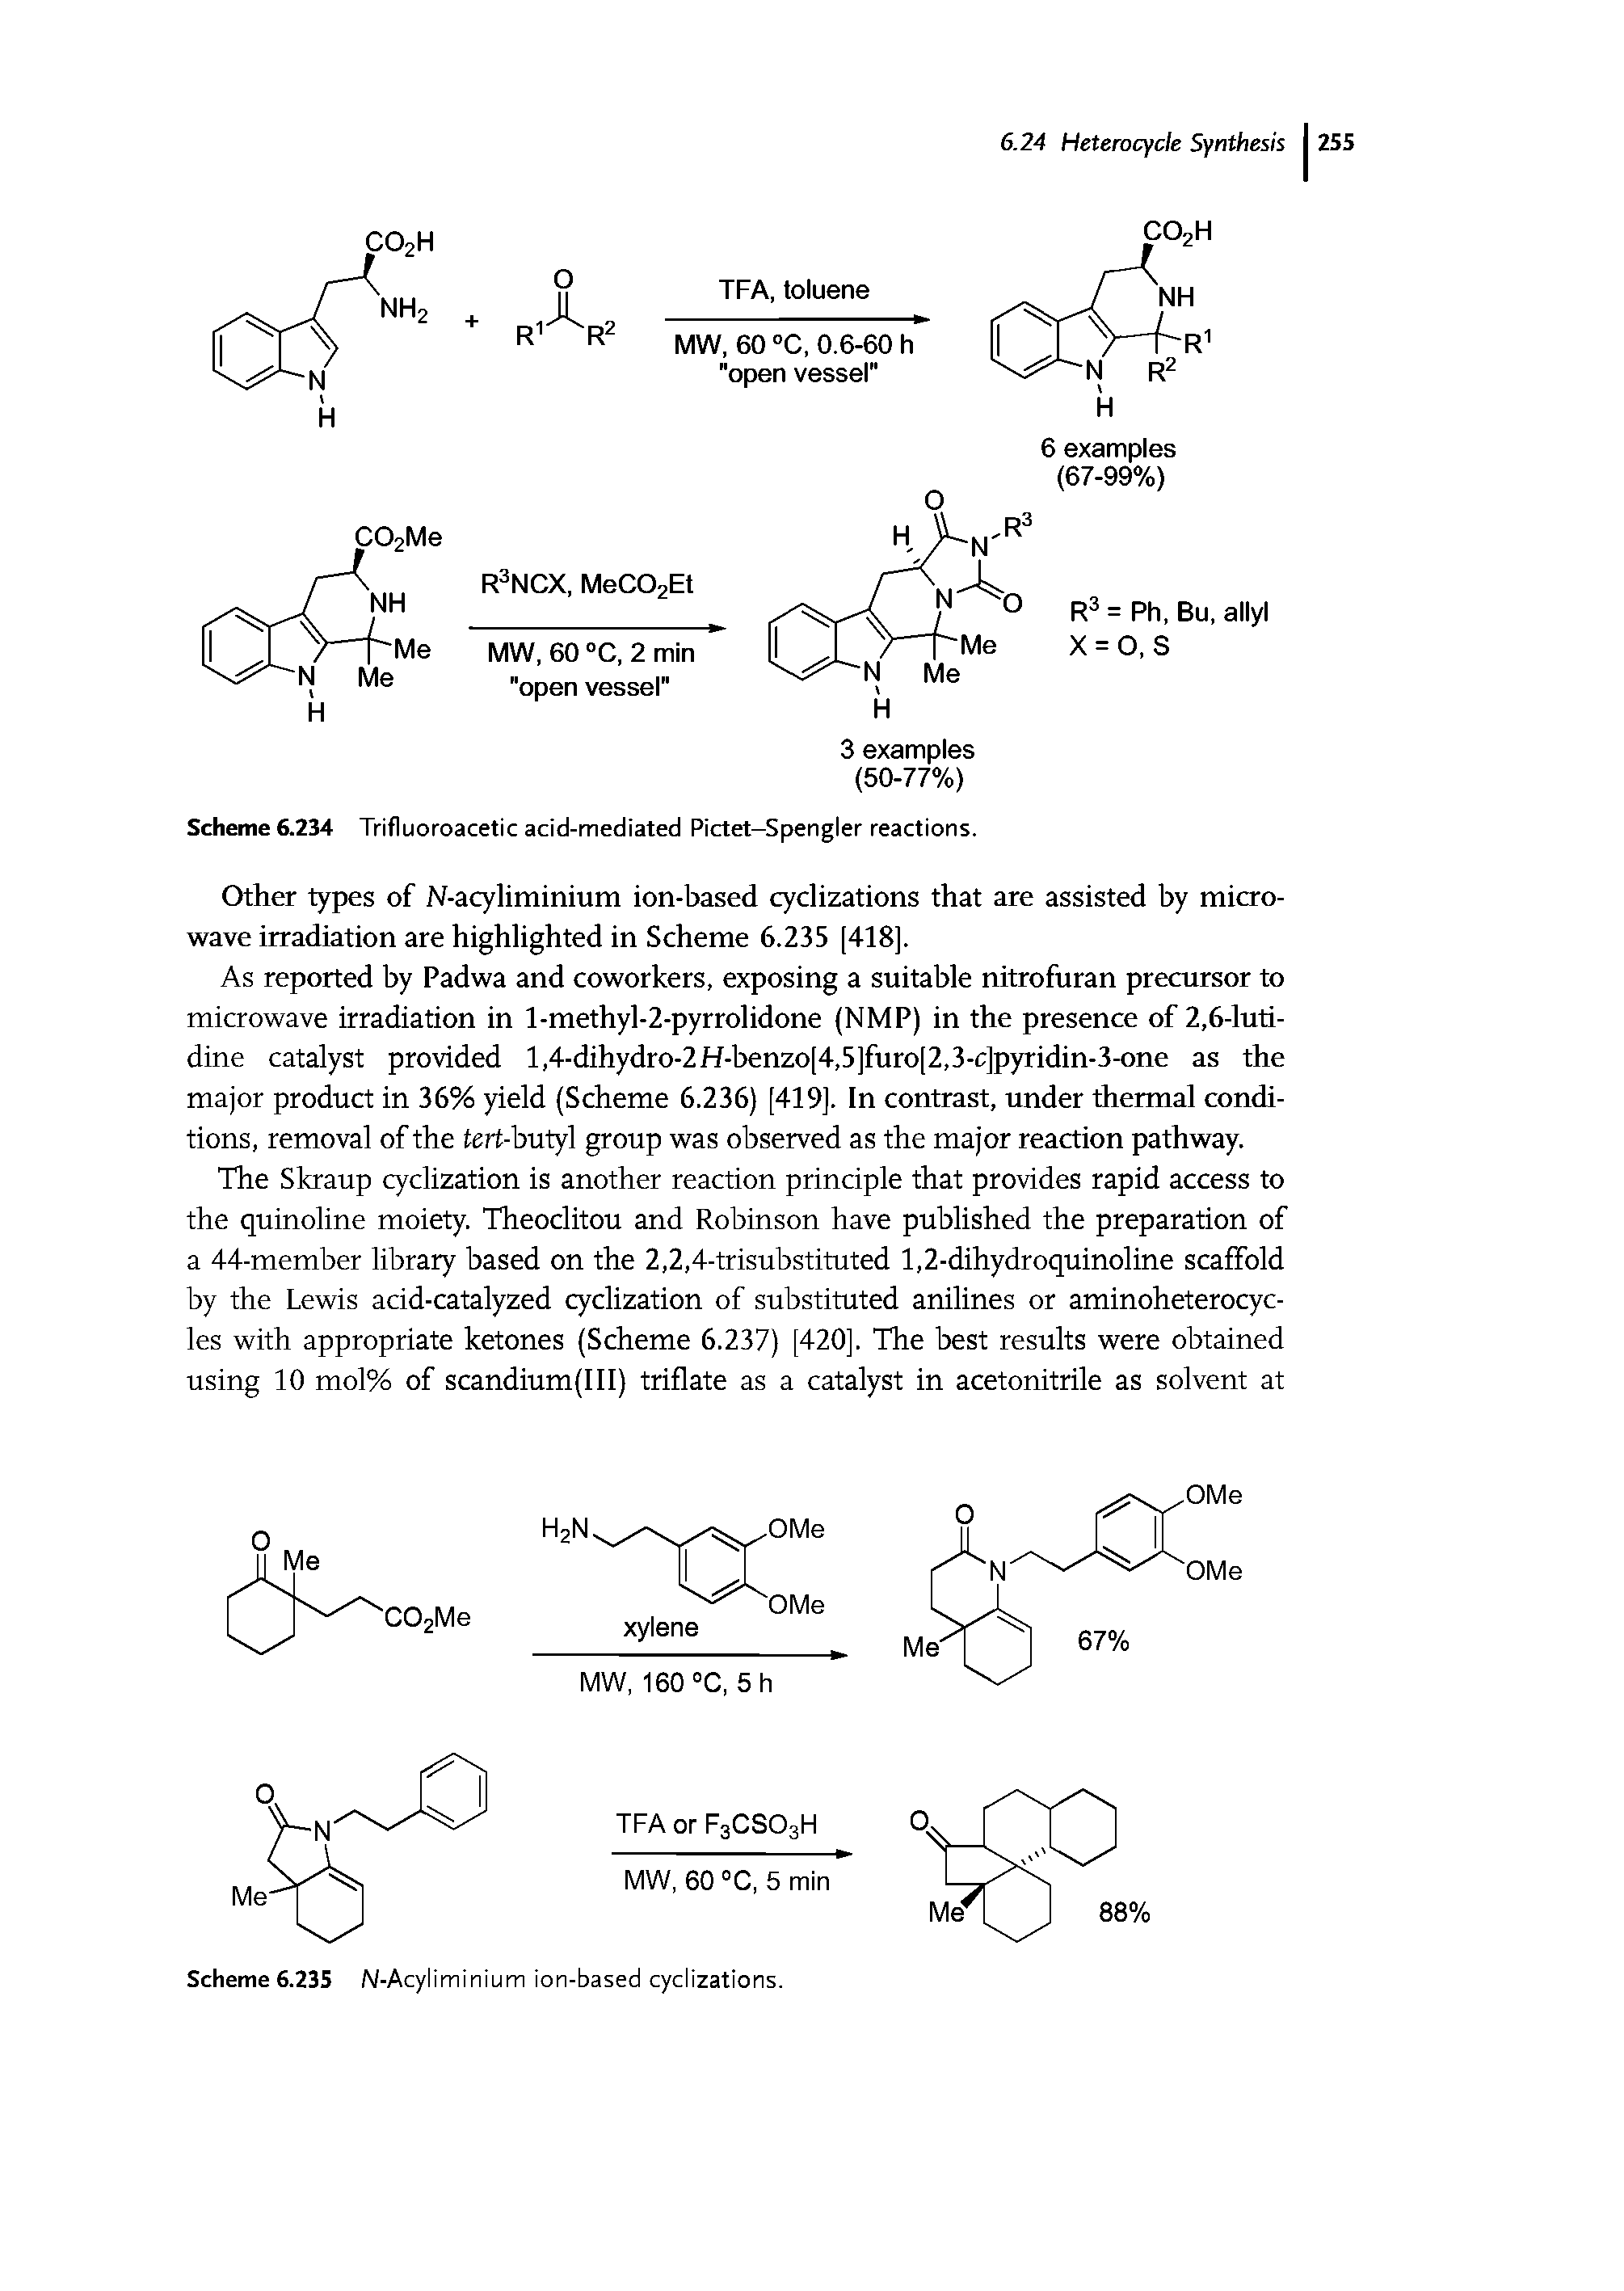 Scheme 6.234 Trifluoroacetic acid-mediated Pictet-Spengler reactions.